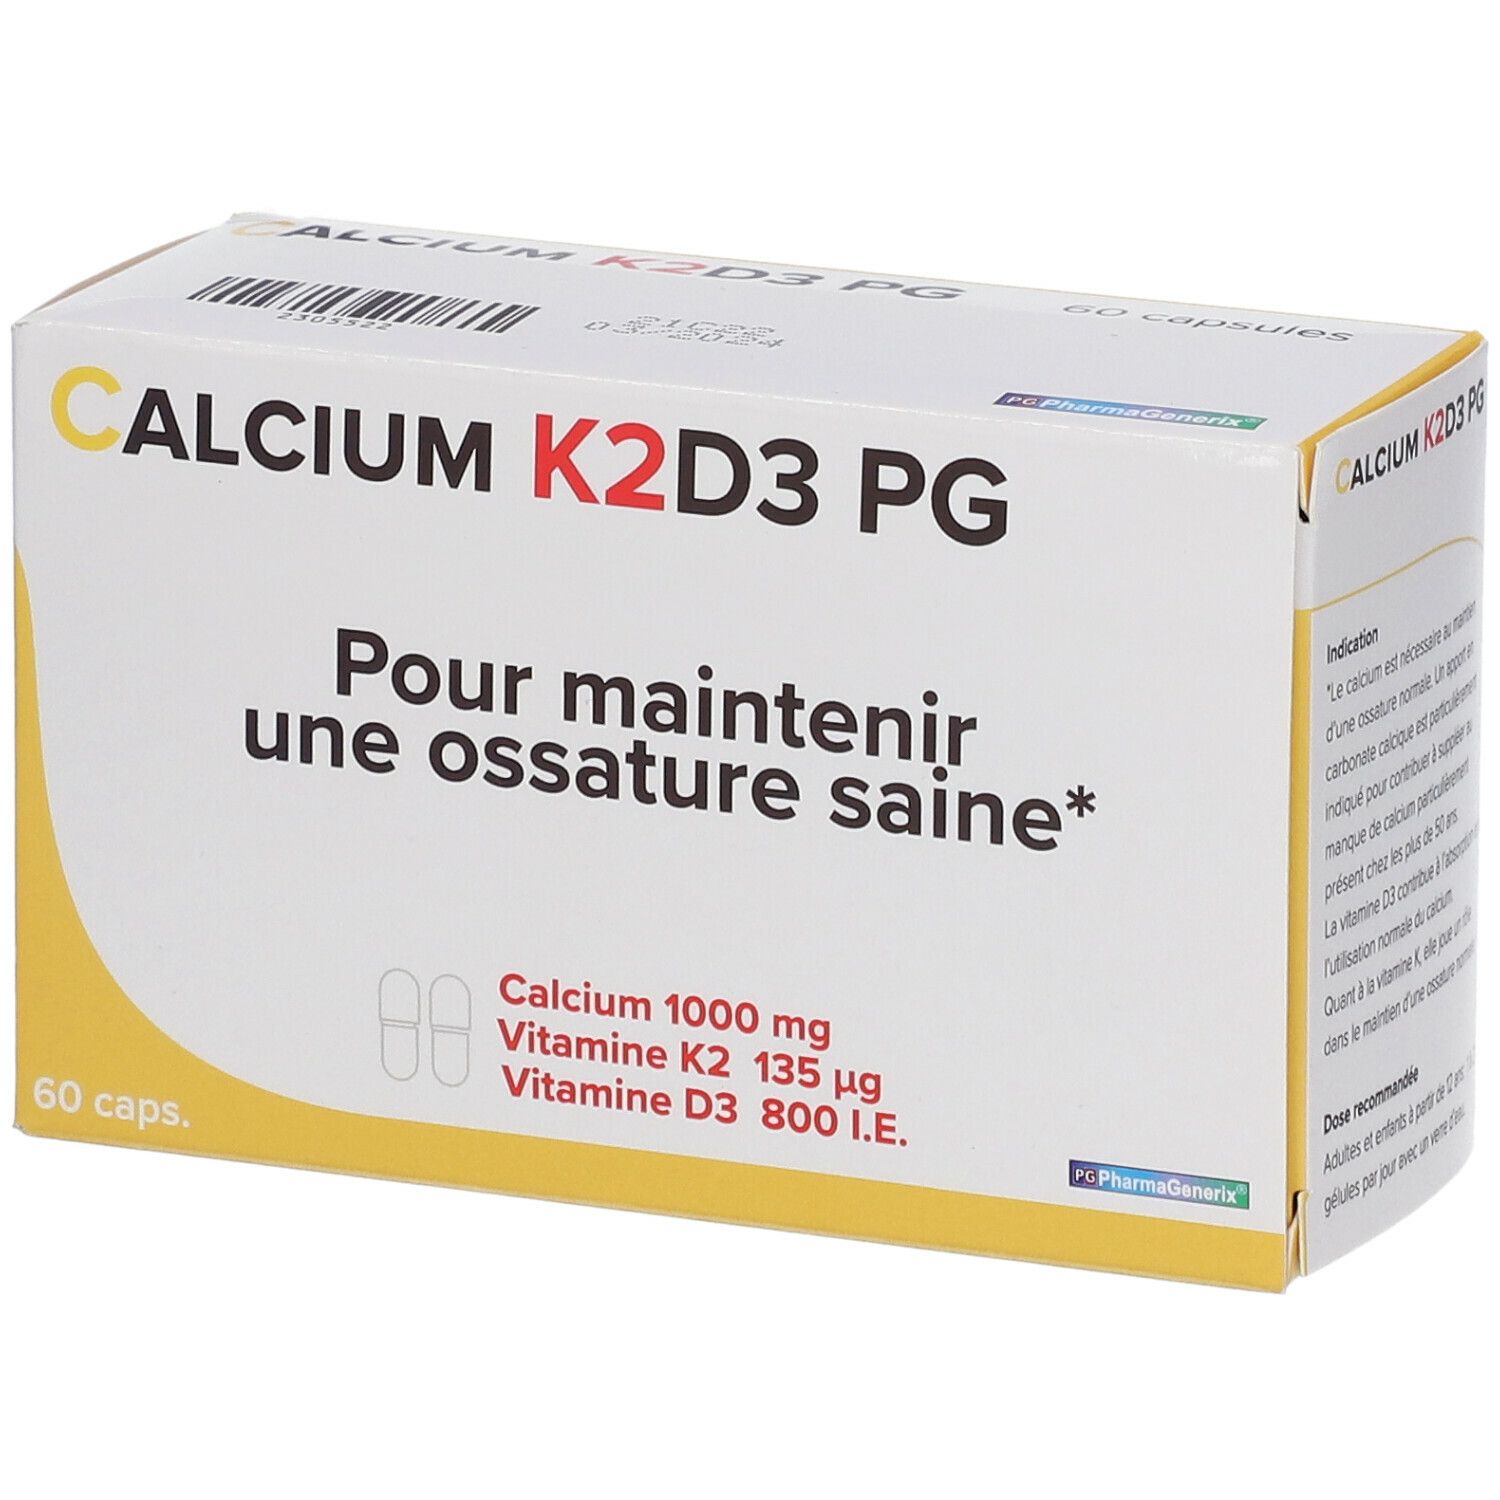 Calcium K2D3 PG